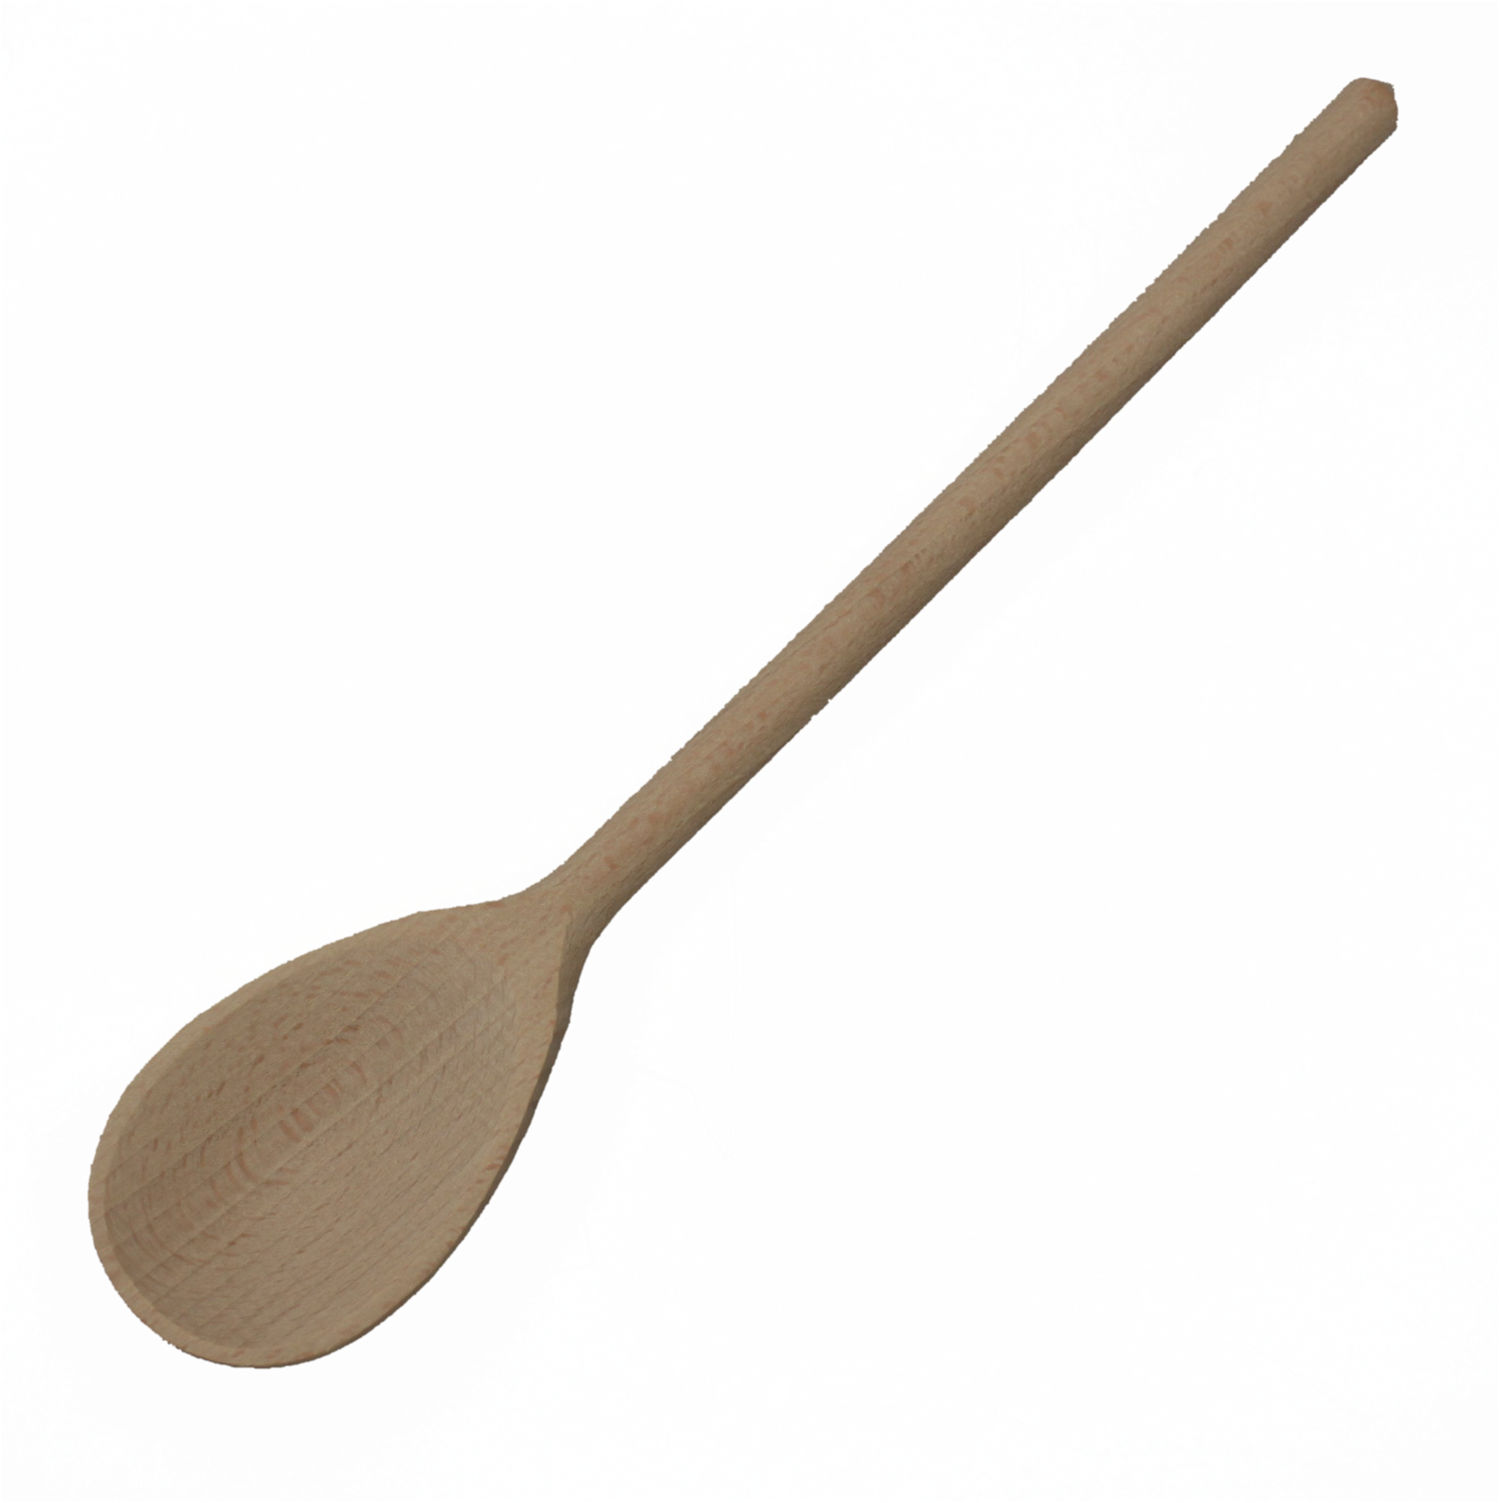 cucchiaio da cucina sostenibile in legno di faggio naturale